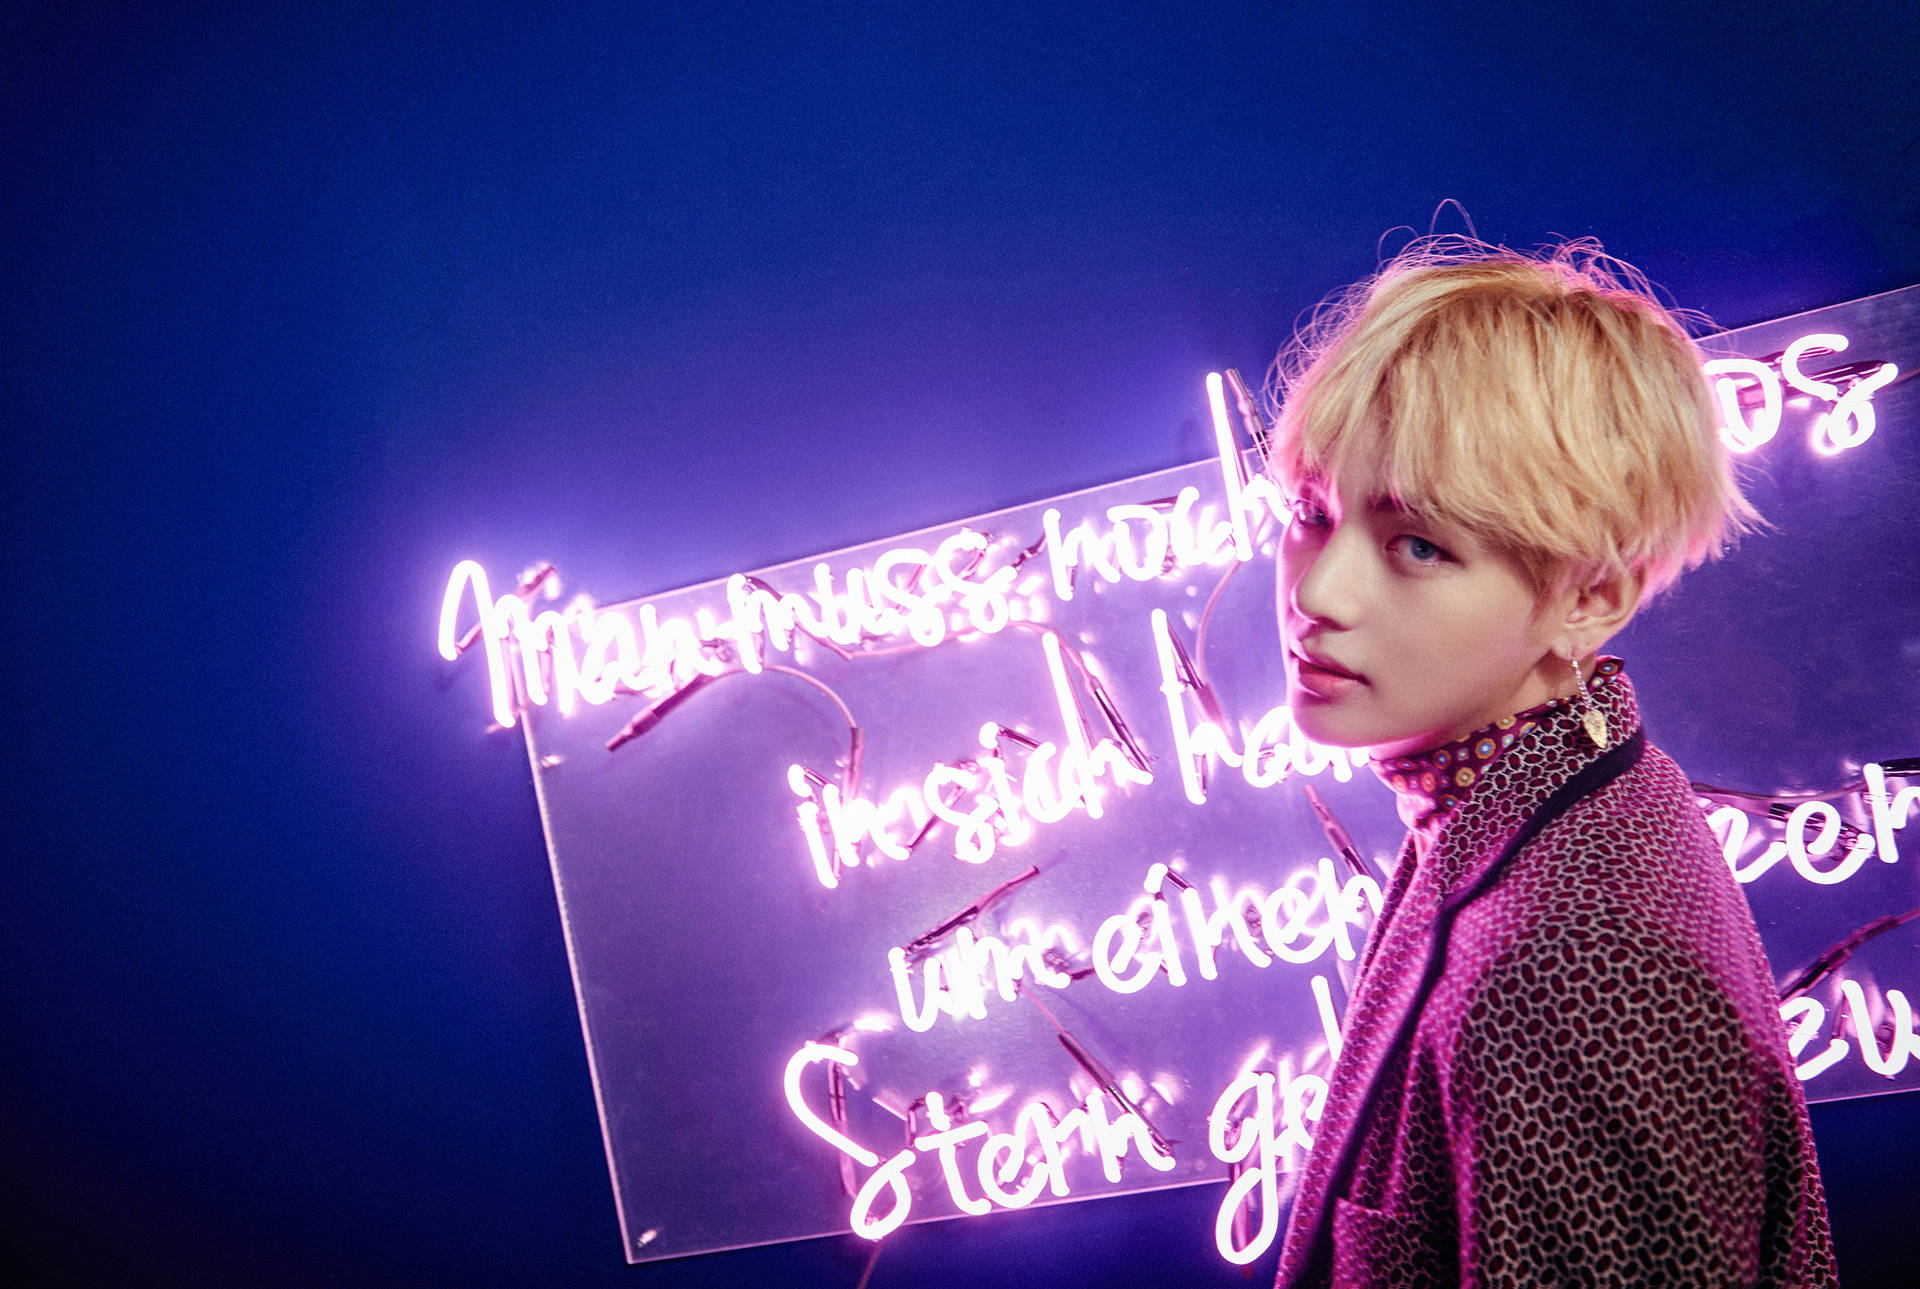 Btstae Hyung Leuchtendes Neon-schild. Wallpaper